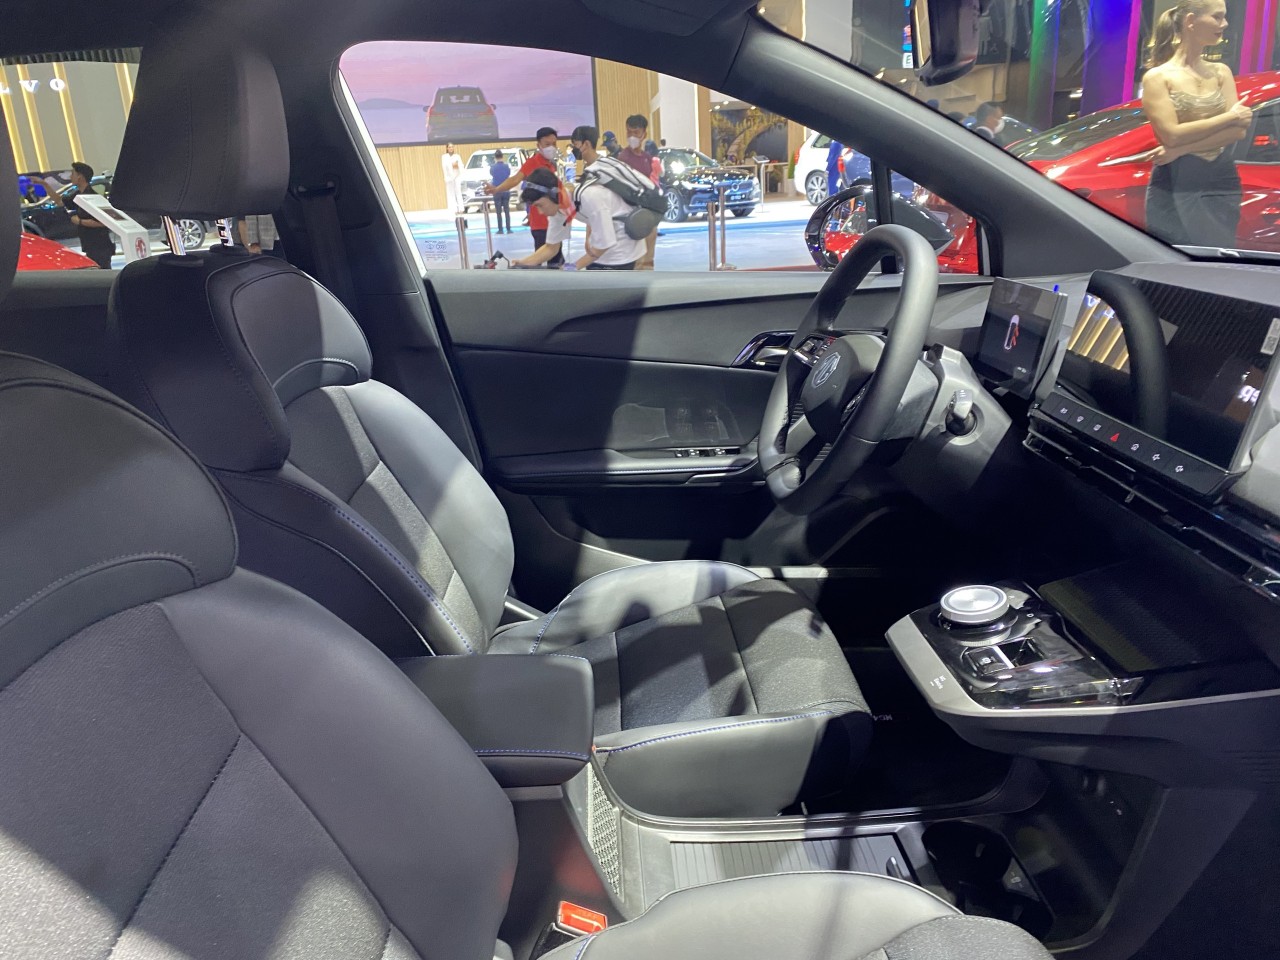 Cận cảnh xe điện MG4 electric tại Vietnam Motor Show 2022